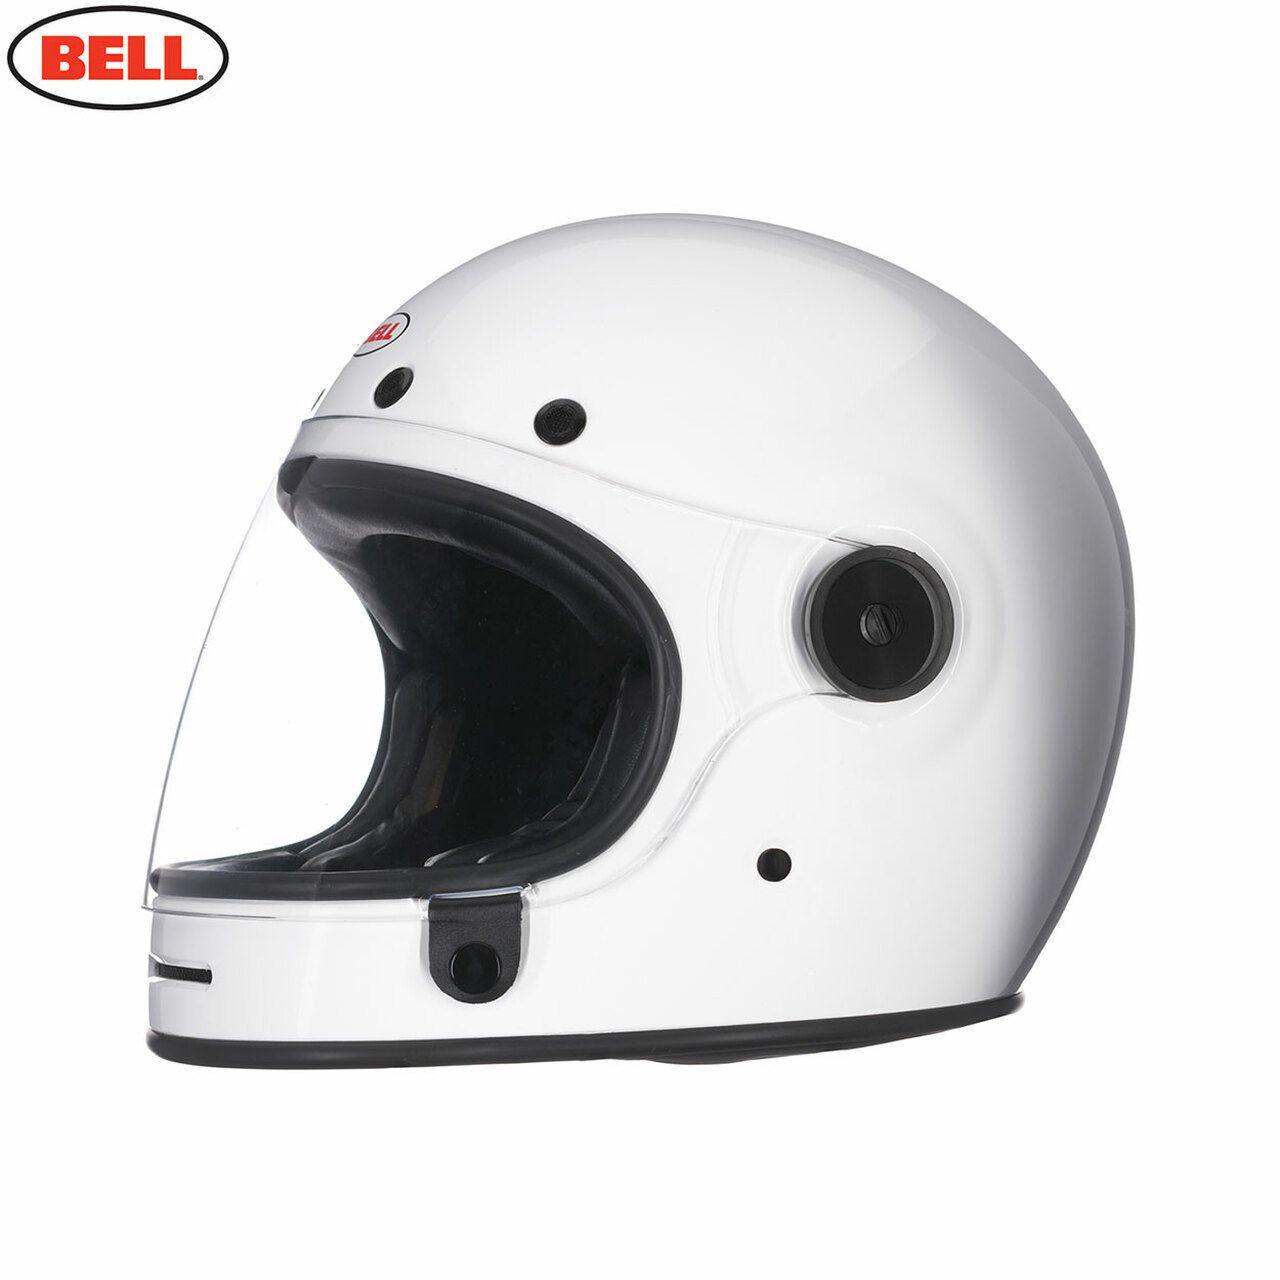 Bell 2020 Cruiser Bullitt DLX Adult Helmet Gloss White